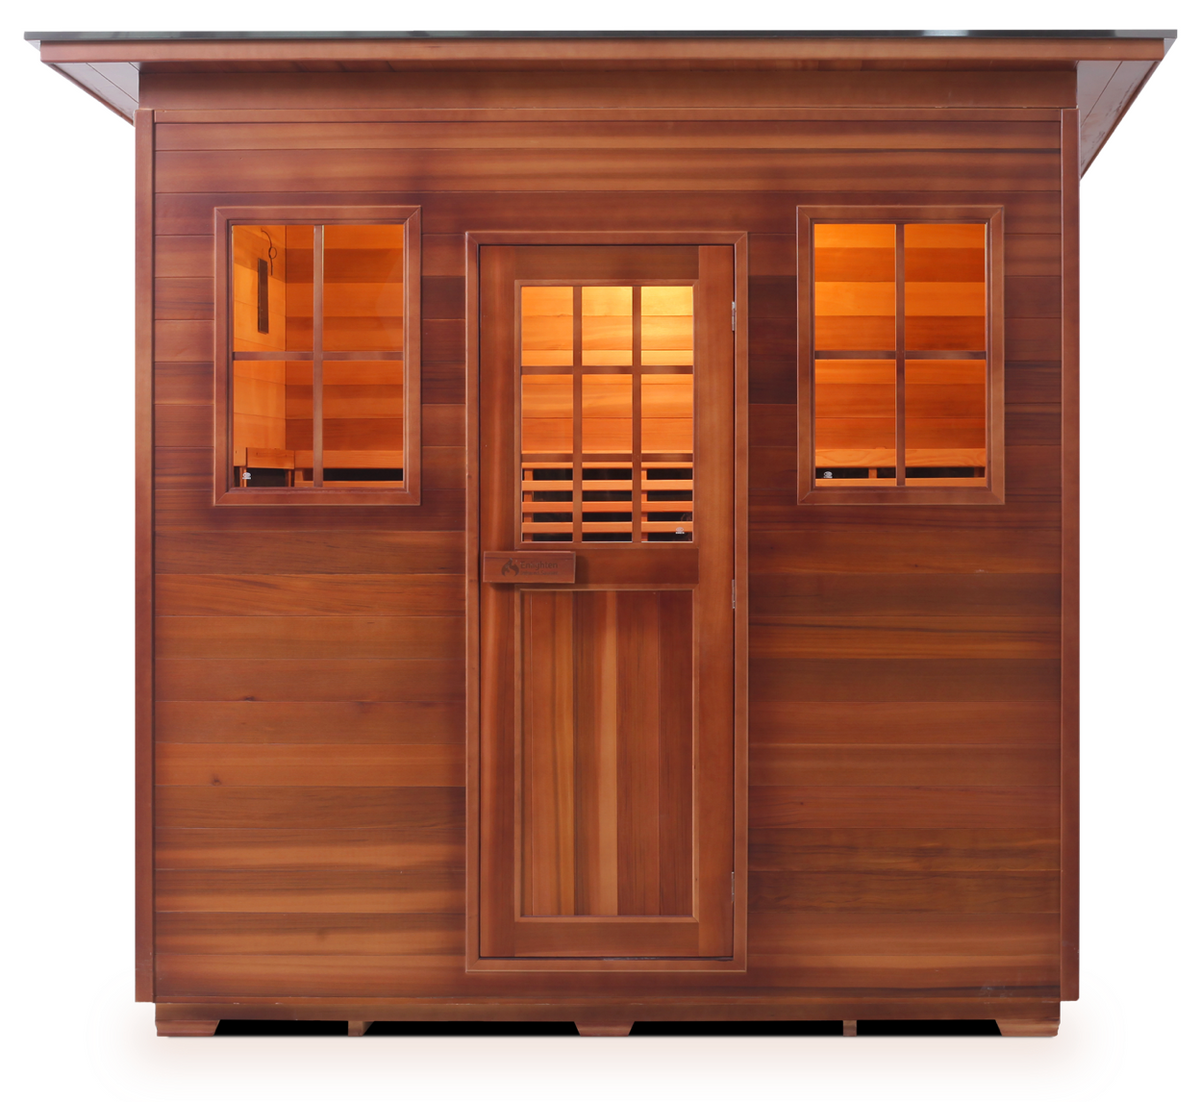 Enlighten Sierra 4 Person Indoor/Outdoor Infrared Sauna